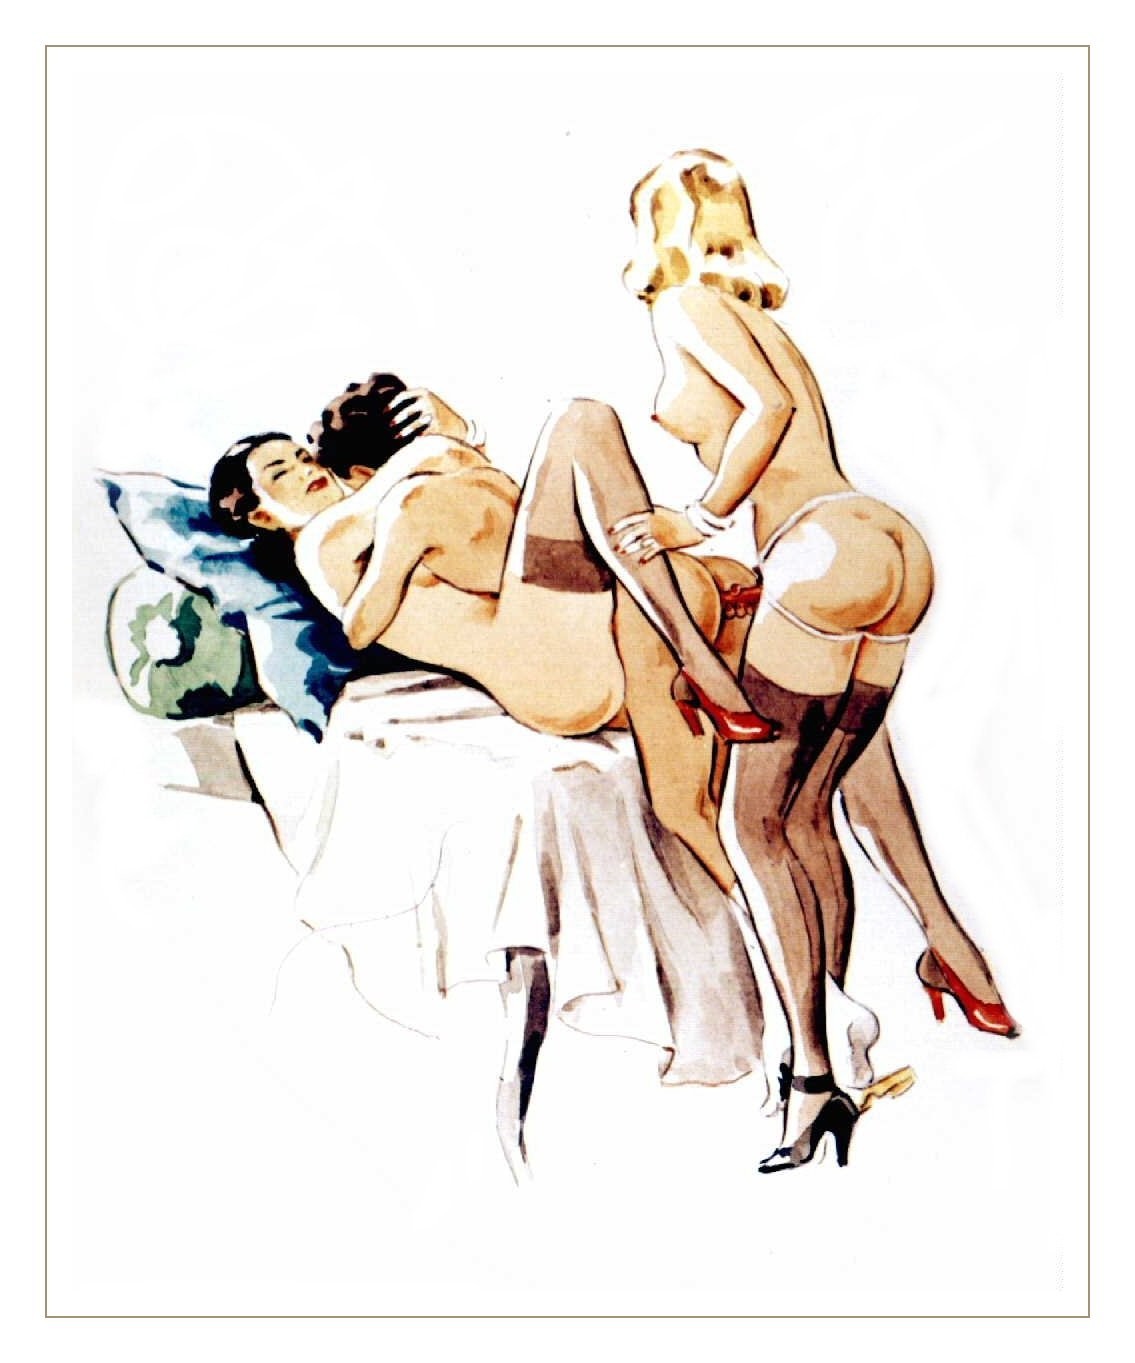 Vintage erotic cartoon art